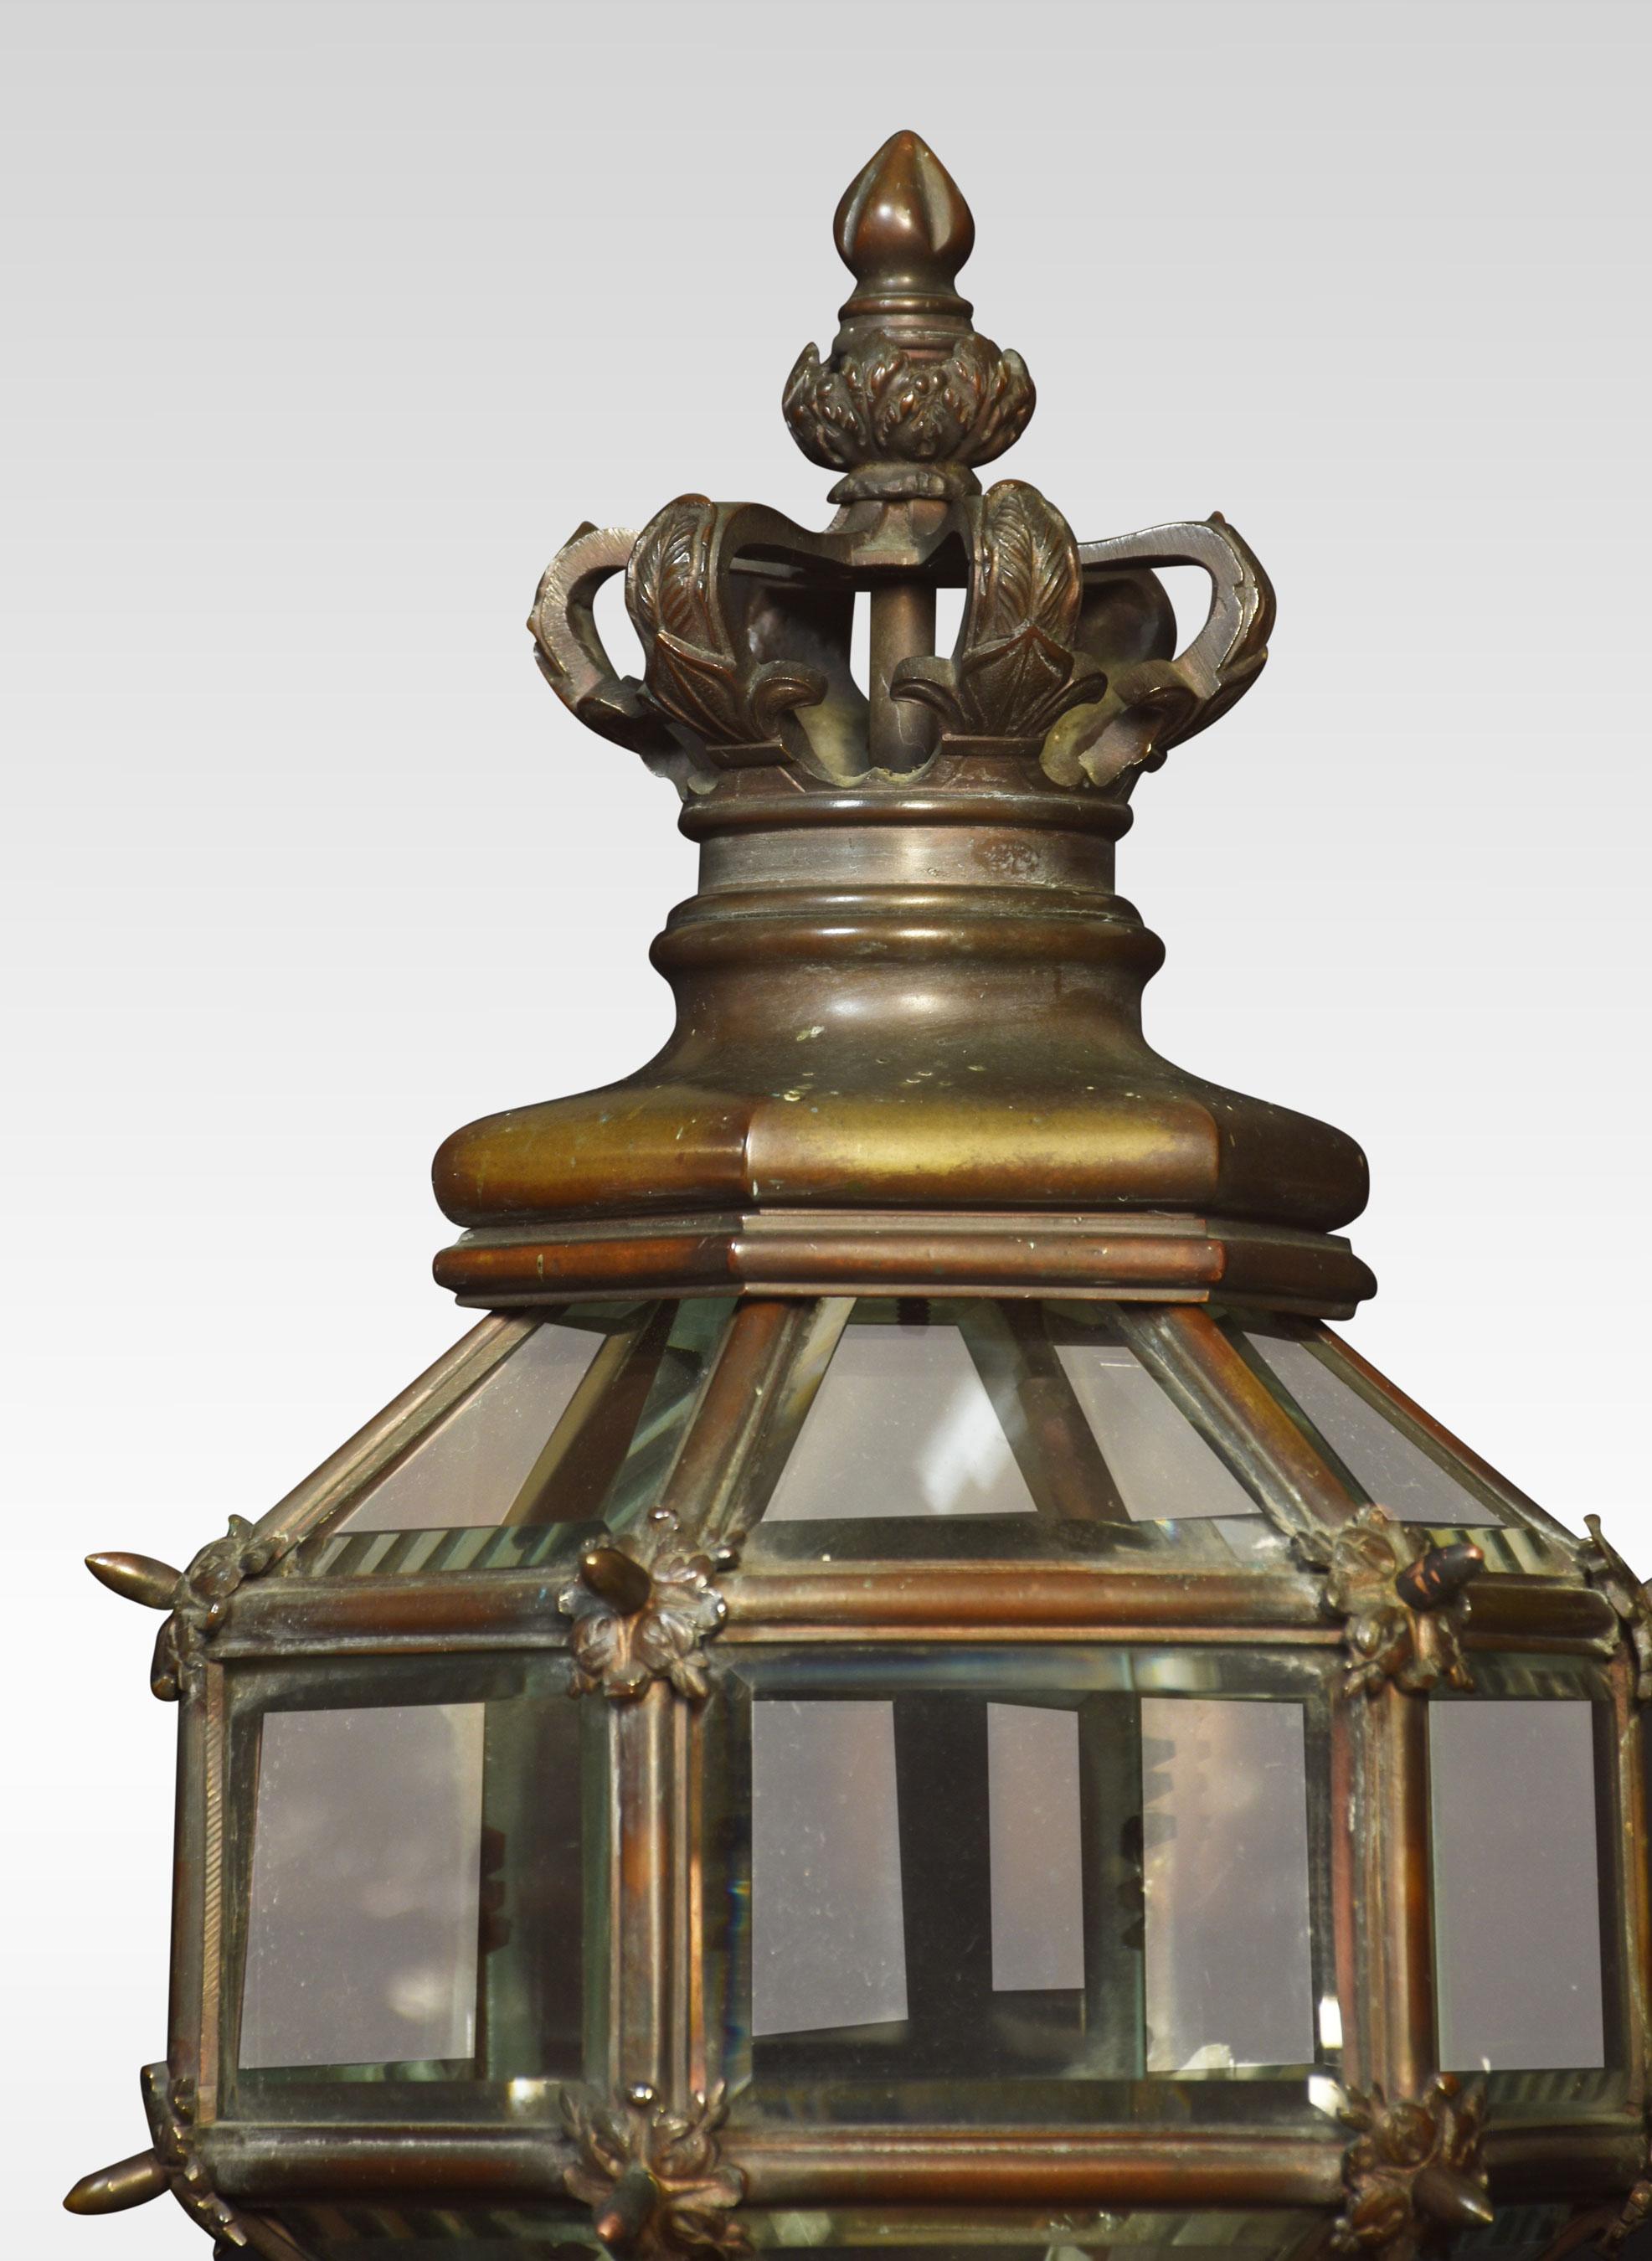 Ein Paar bronzene Newel-Lampen, die Kronen über sechseckigen verglasten Laternen, die auf geriffelten Stielen und runden Sockeln stehen. Die Lampen wurden neu verkabelt.
Abmessungen
Höhe 37 Zoll
Breite 9,5 Zoll
Tiefe 9,5 Zoll.
 